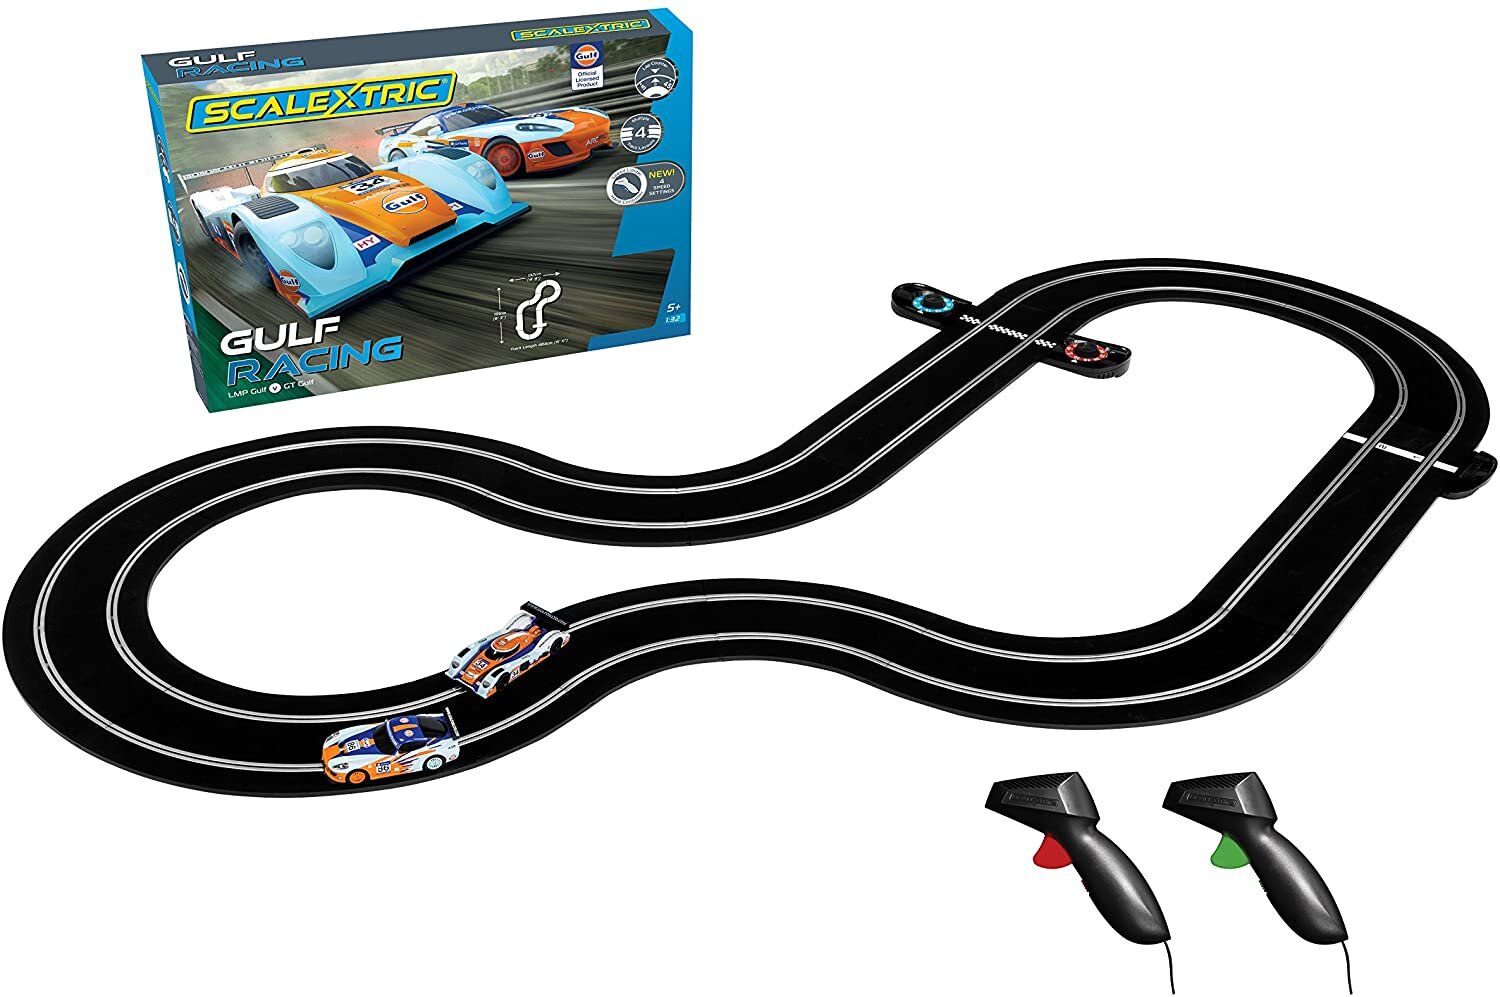 Typical race car set